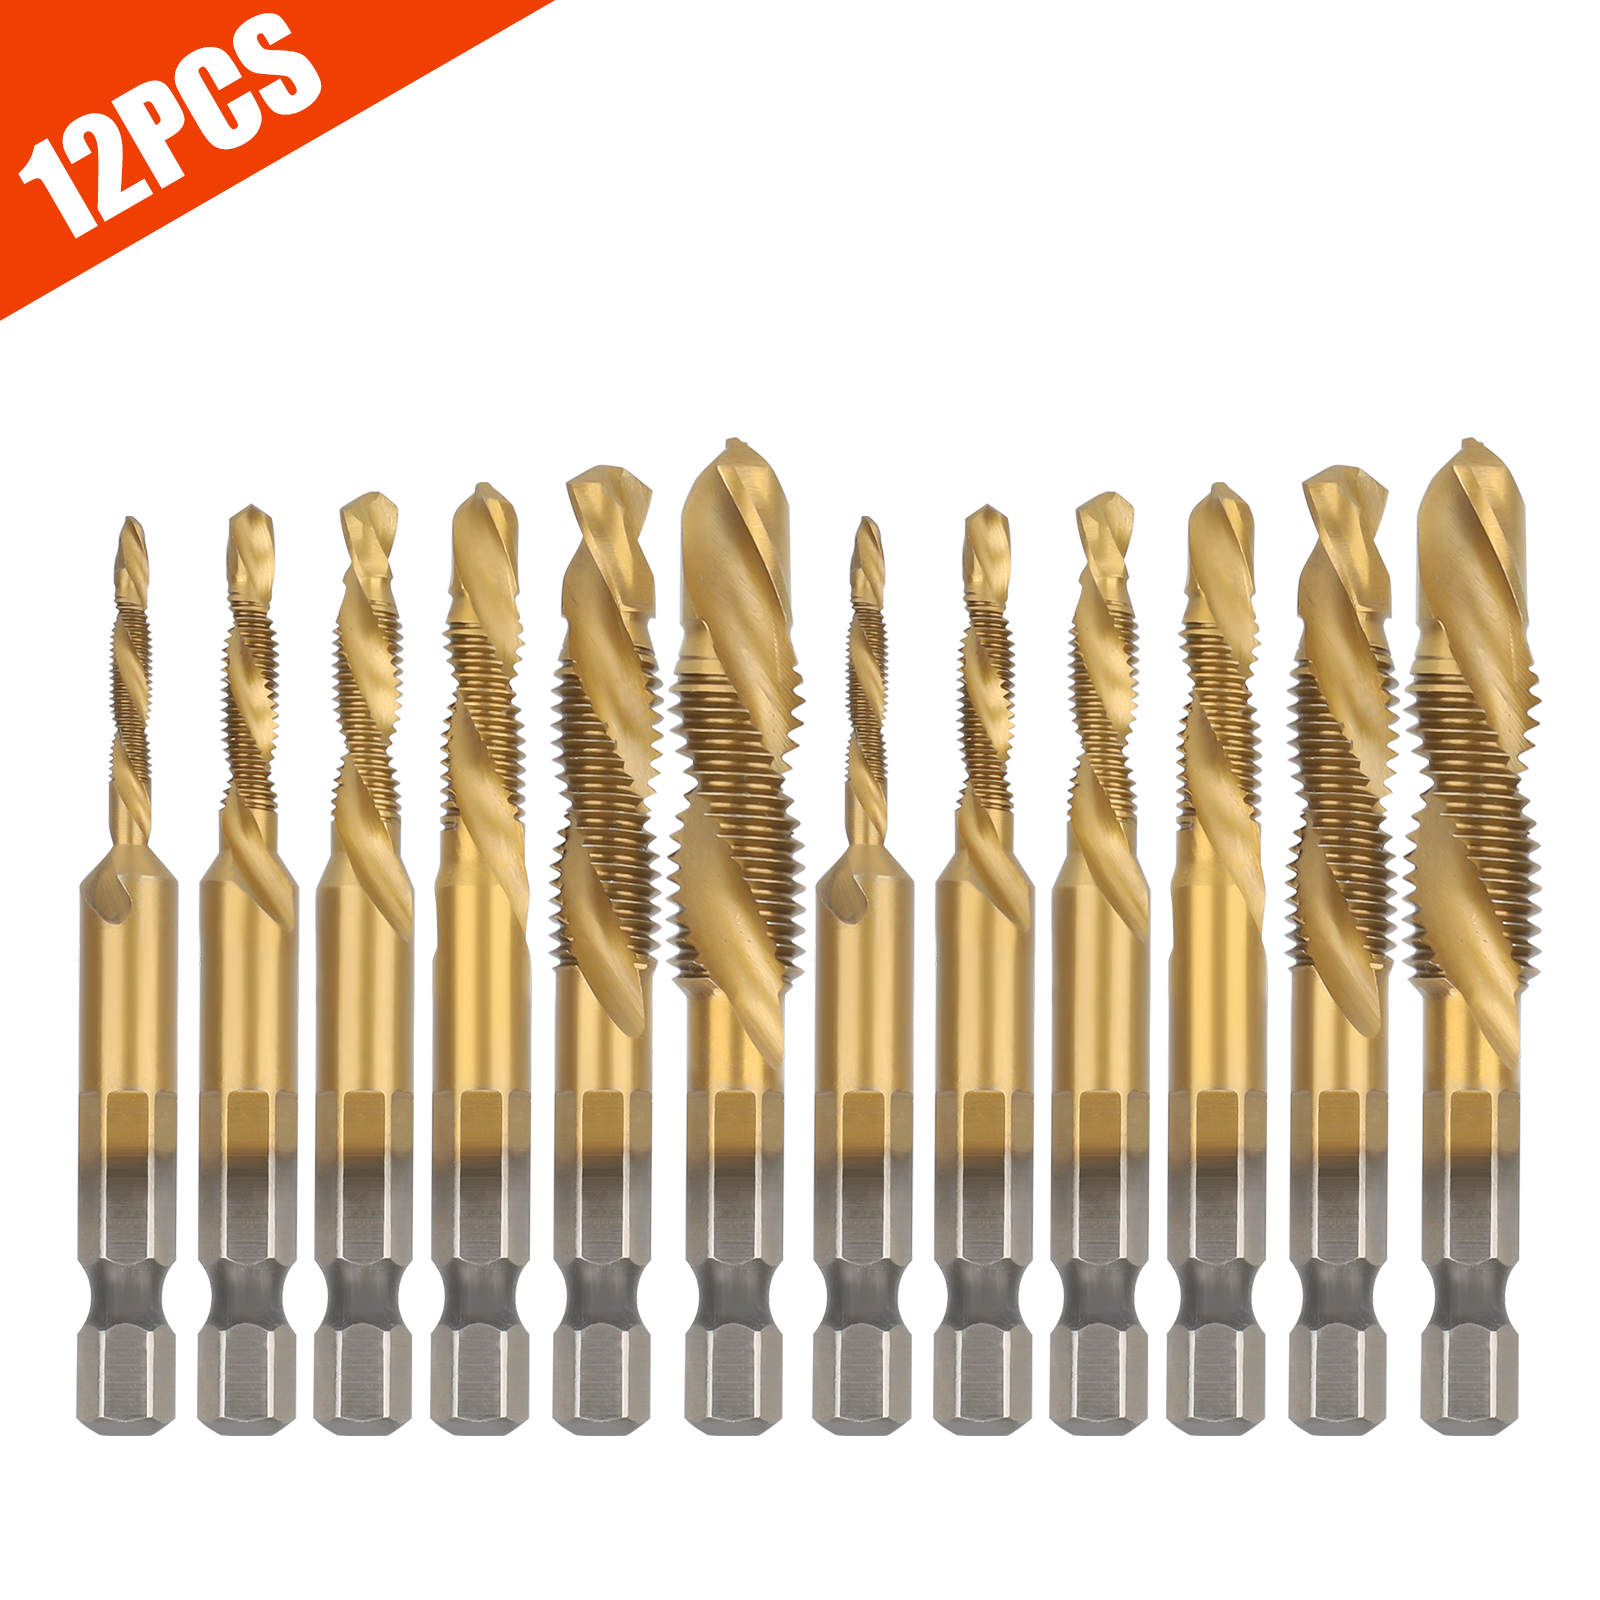 P12cheng Step Drill Bits,M10 1/4inch Hex Shank HSS Metric Right Hand Screw Thread Tap Taper Drill Bit